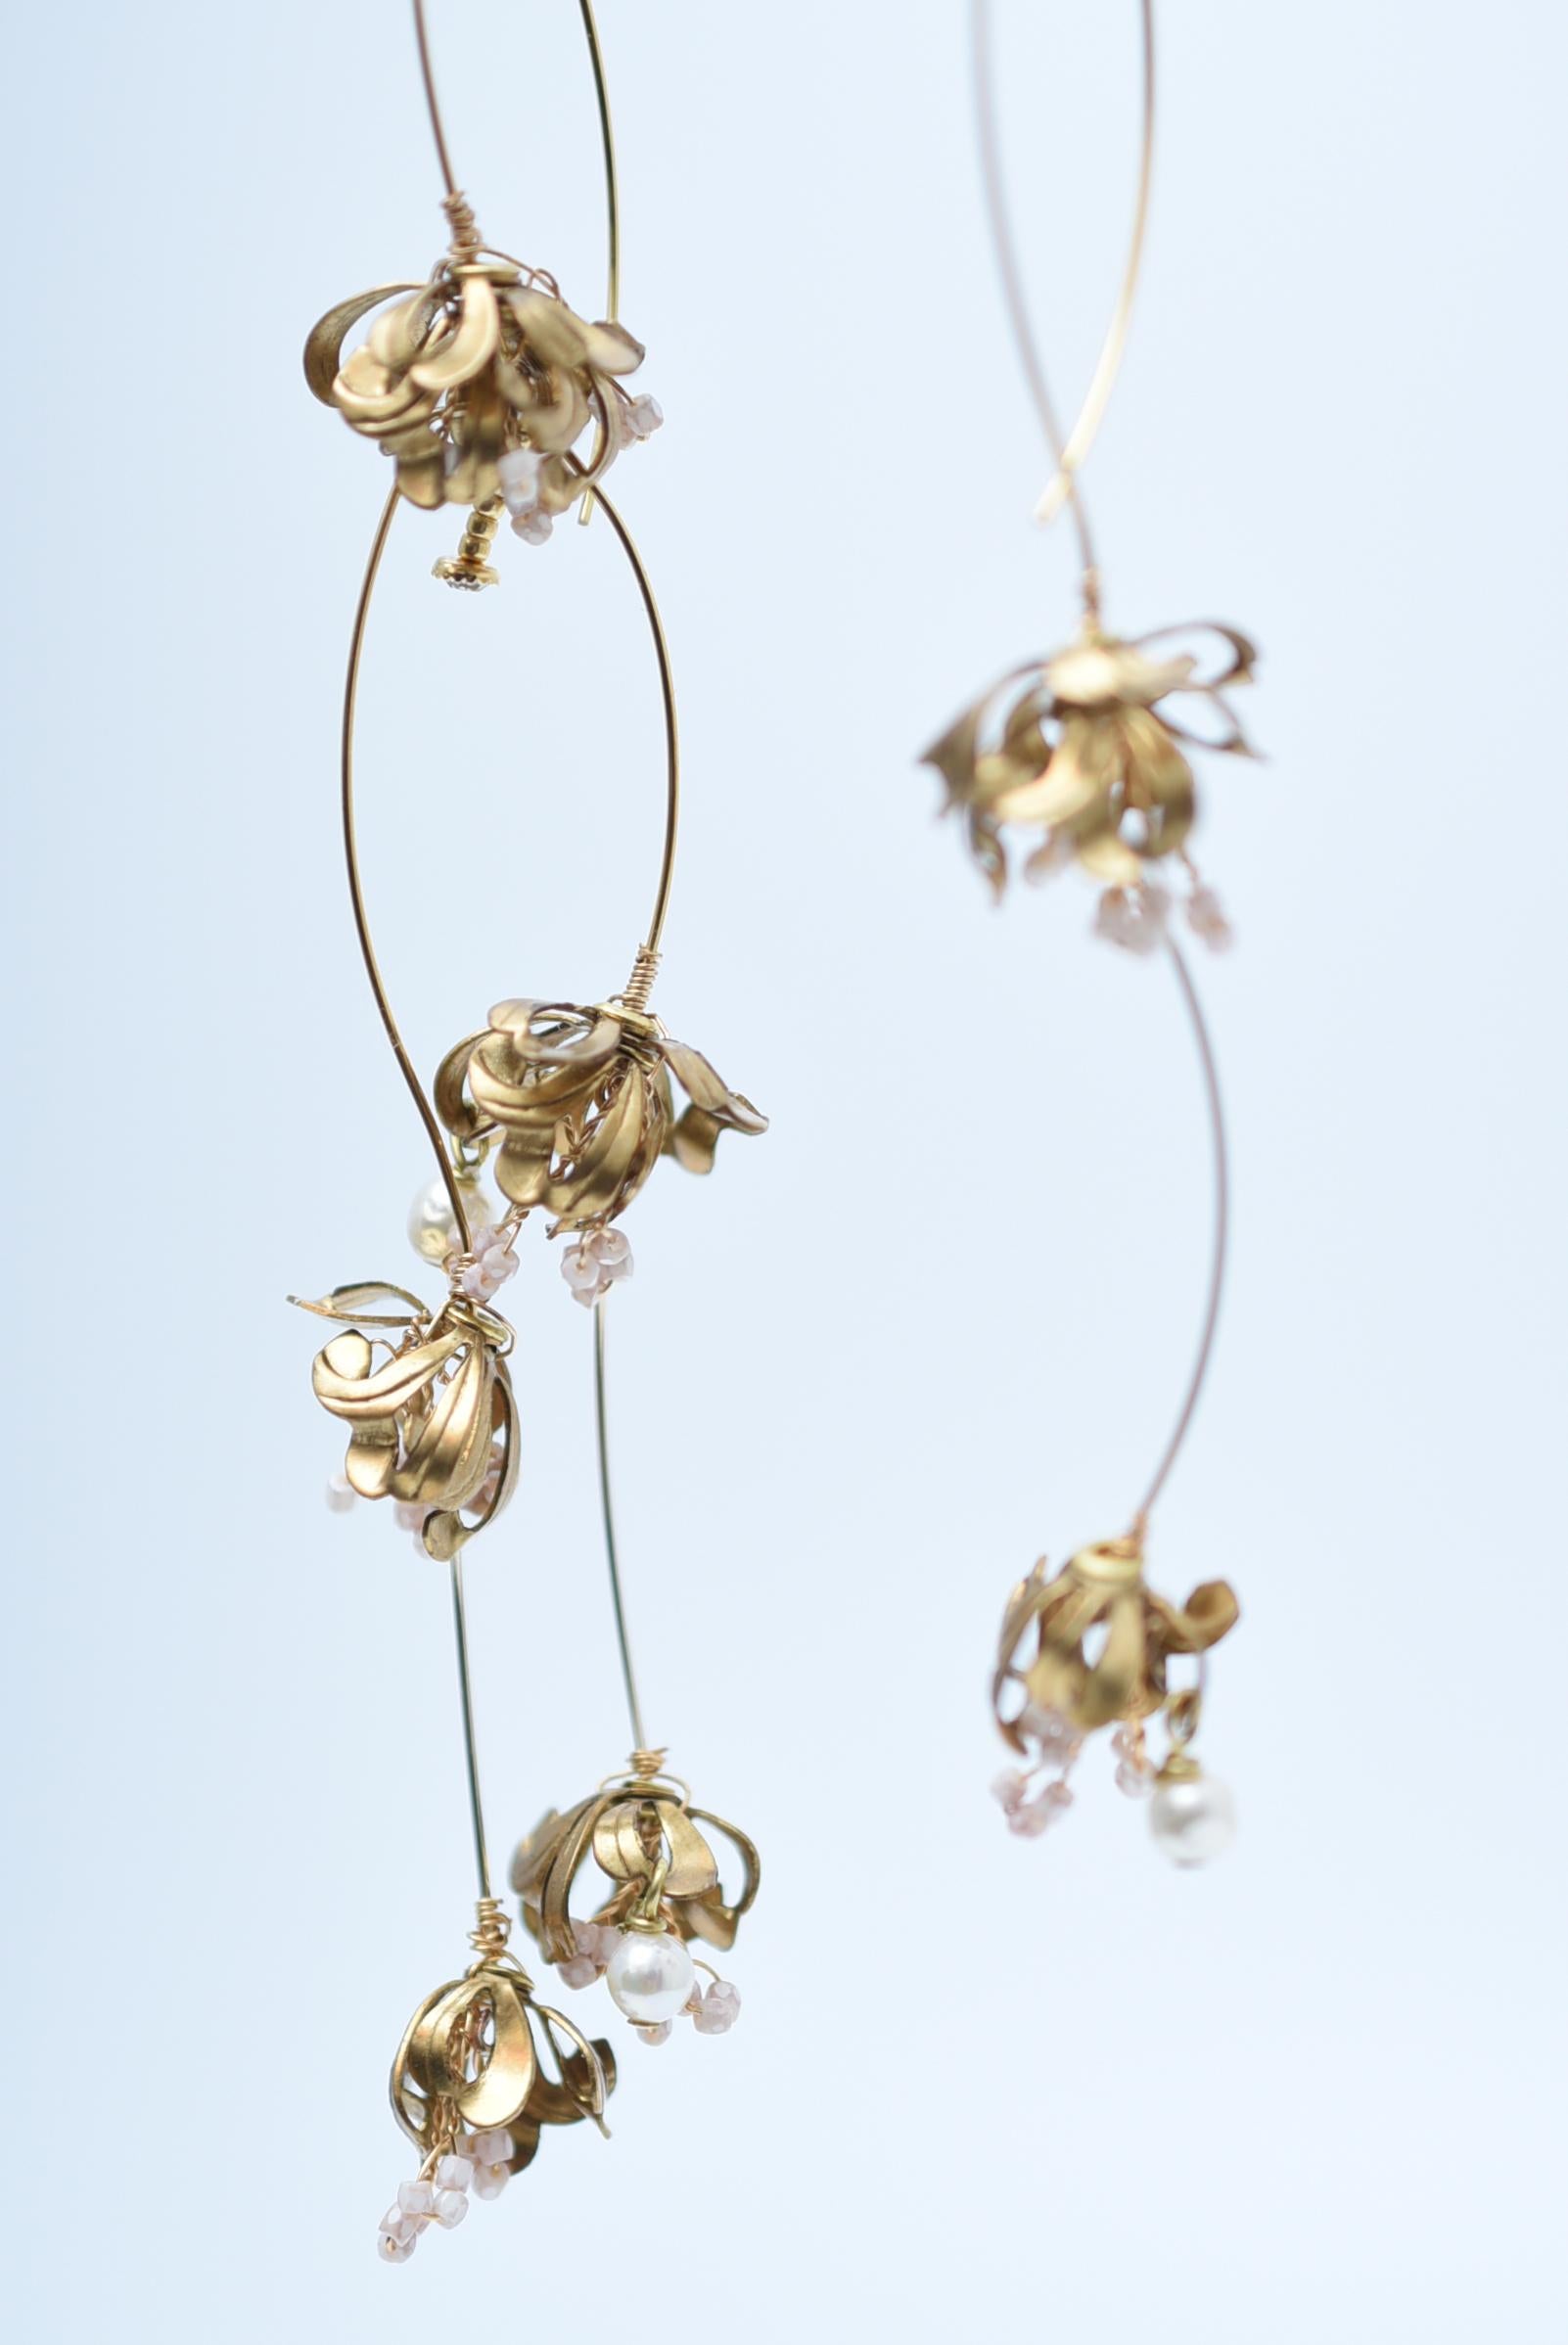 Matière:Laiton, Vintage 1970 Perles de verre japonaises,Swarovski,pièces vintage des années 1970
taille : longueur 13cm

Ces boucles d'oreilles à la mode ont une longueur généreuse de 13 cm et sont asymétriques.
Les mobiles se balancent autour de